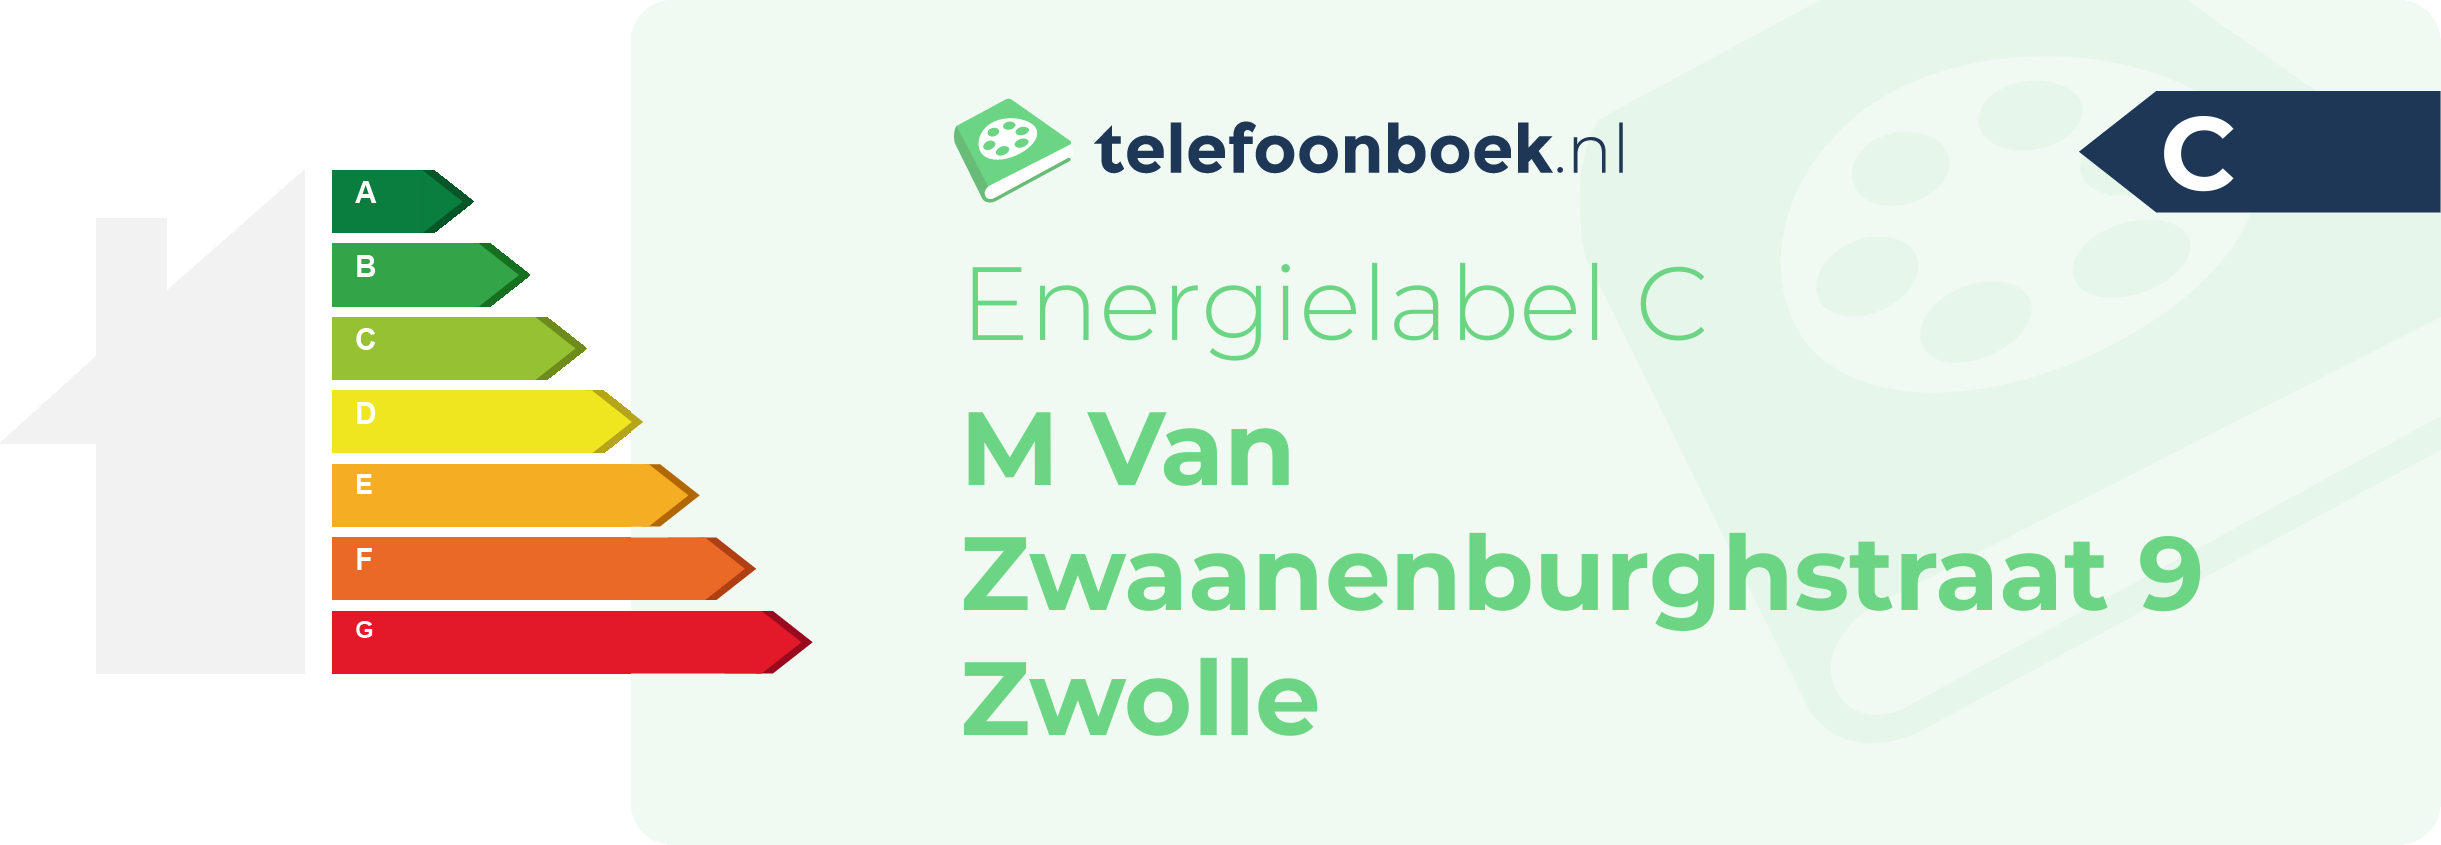 Energielabel M Van Zwaanenburghstraat 9 Zwolle